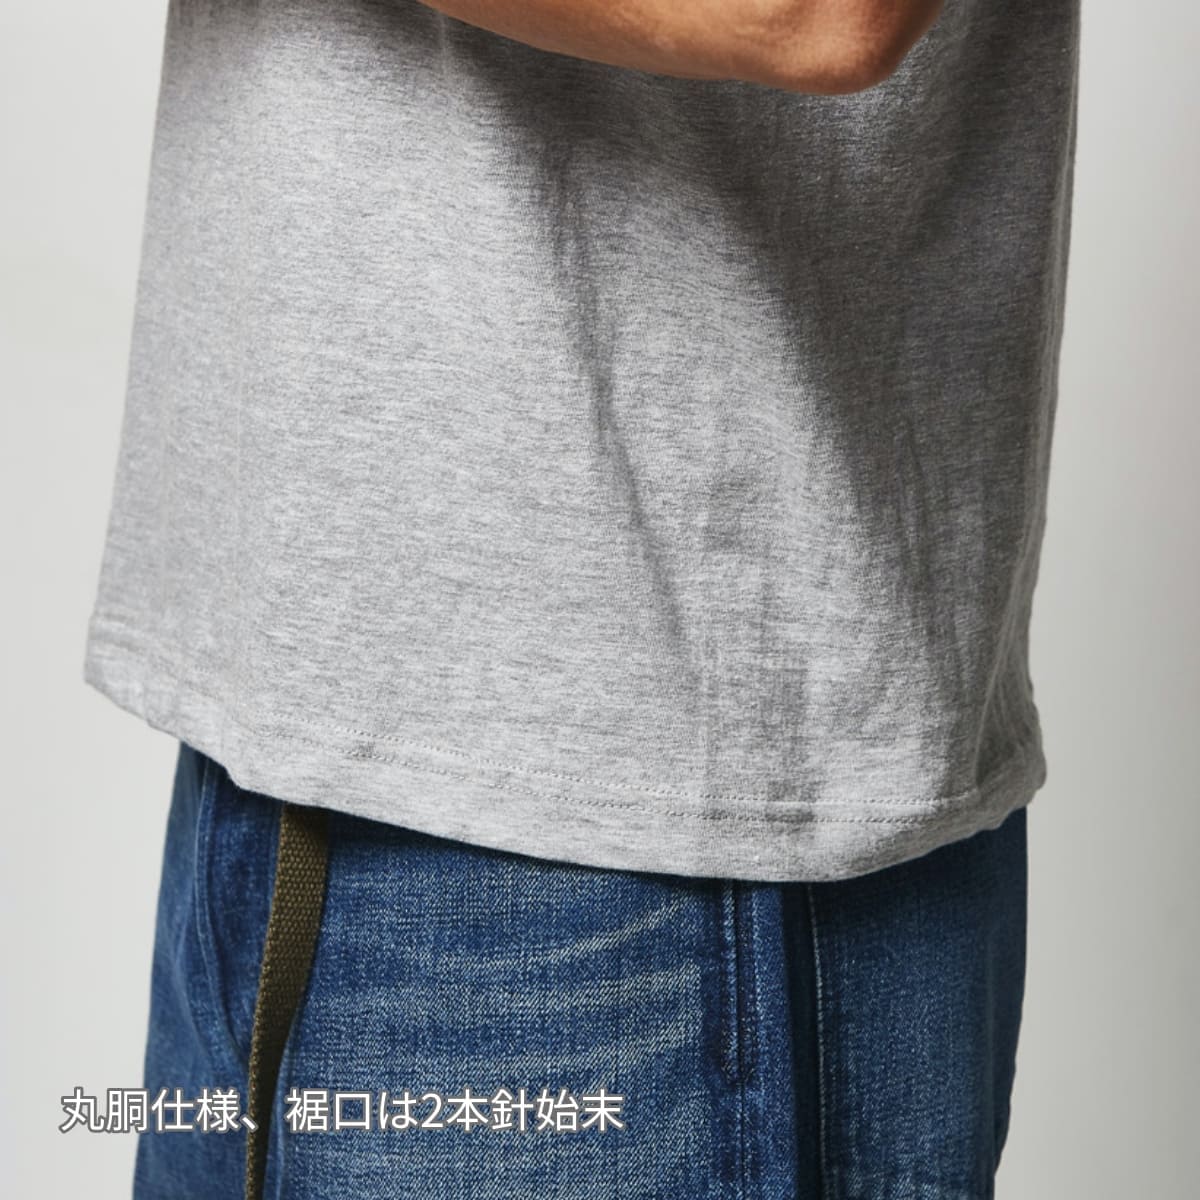 6.2オンス プレミアム Tシャツ | ビッグサイズ | 1枚 | 5942-01 | ミックスグレー